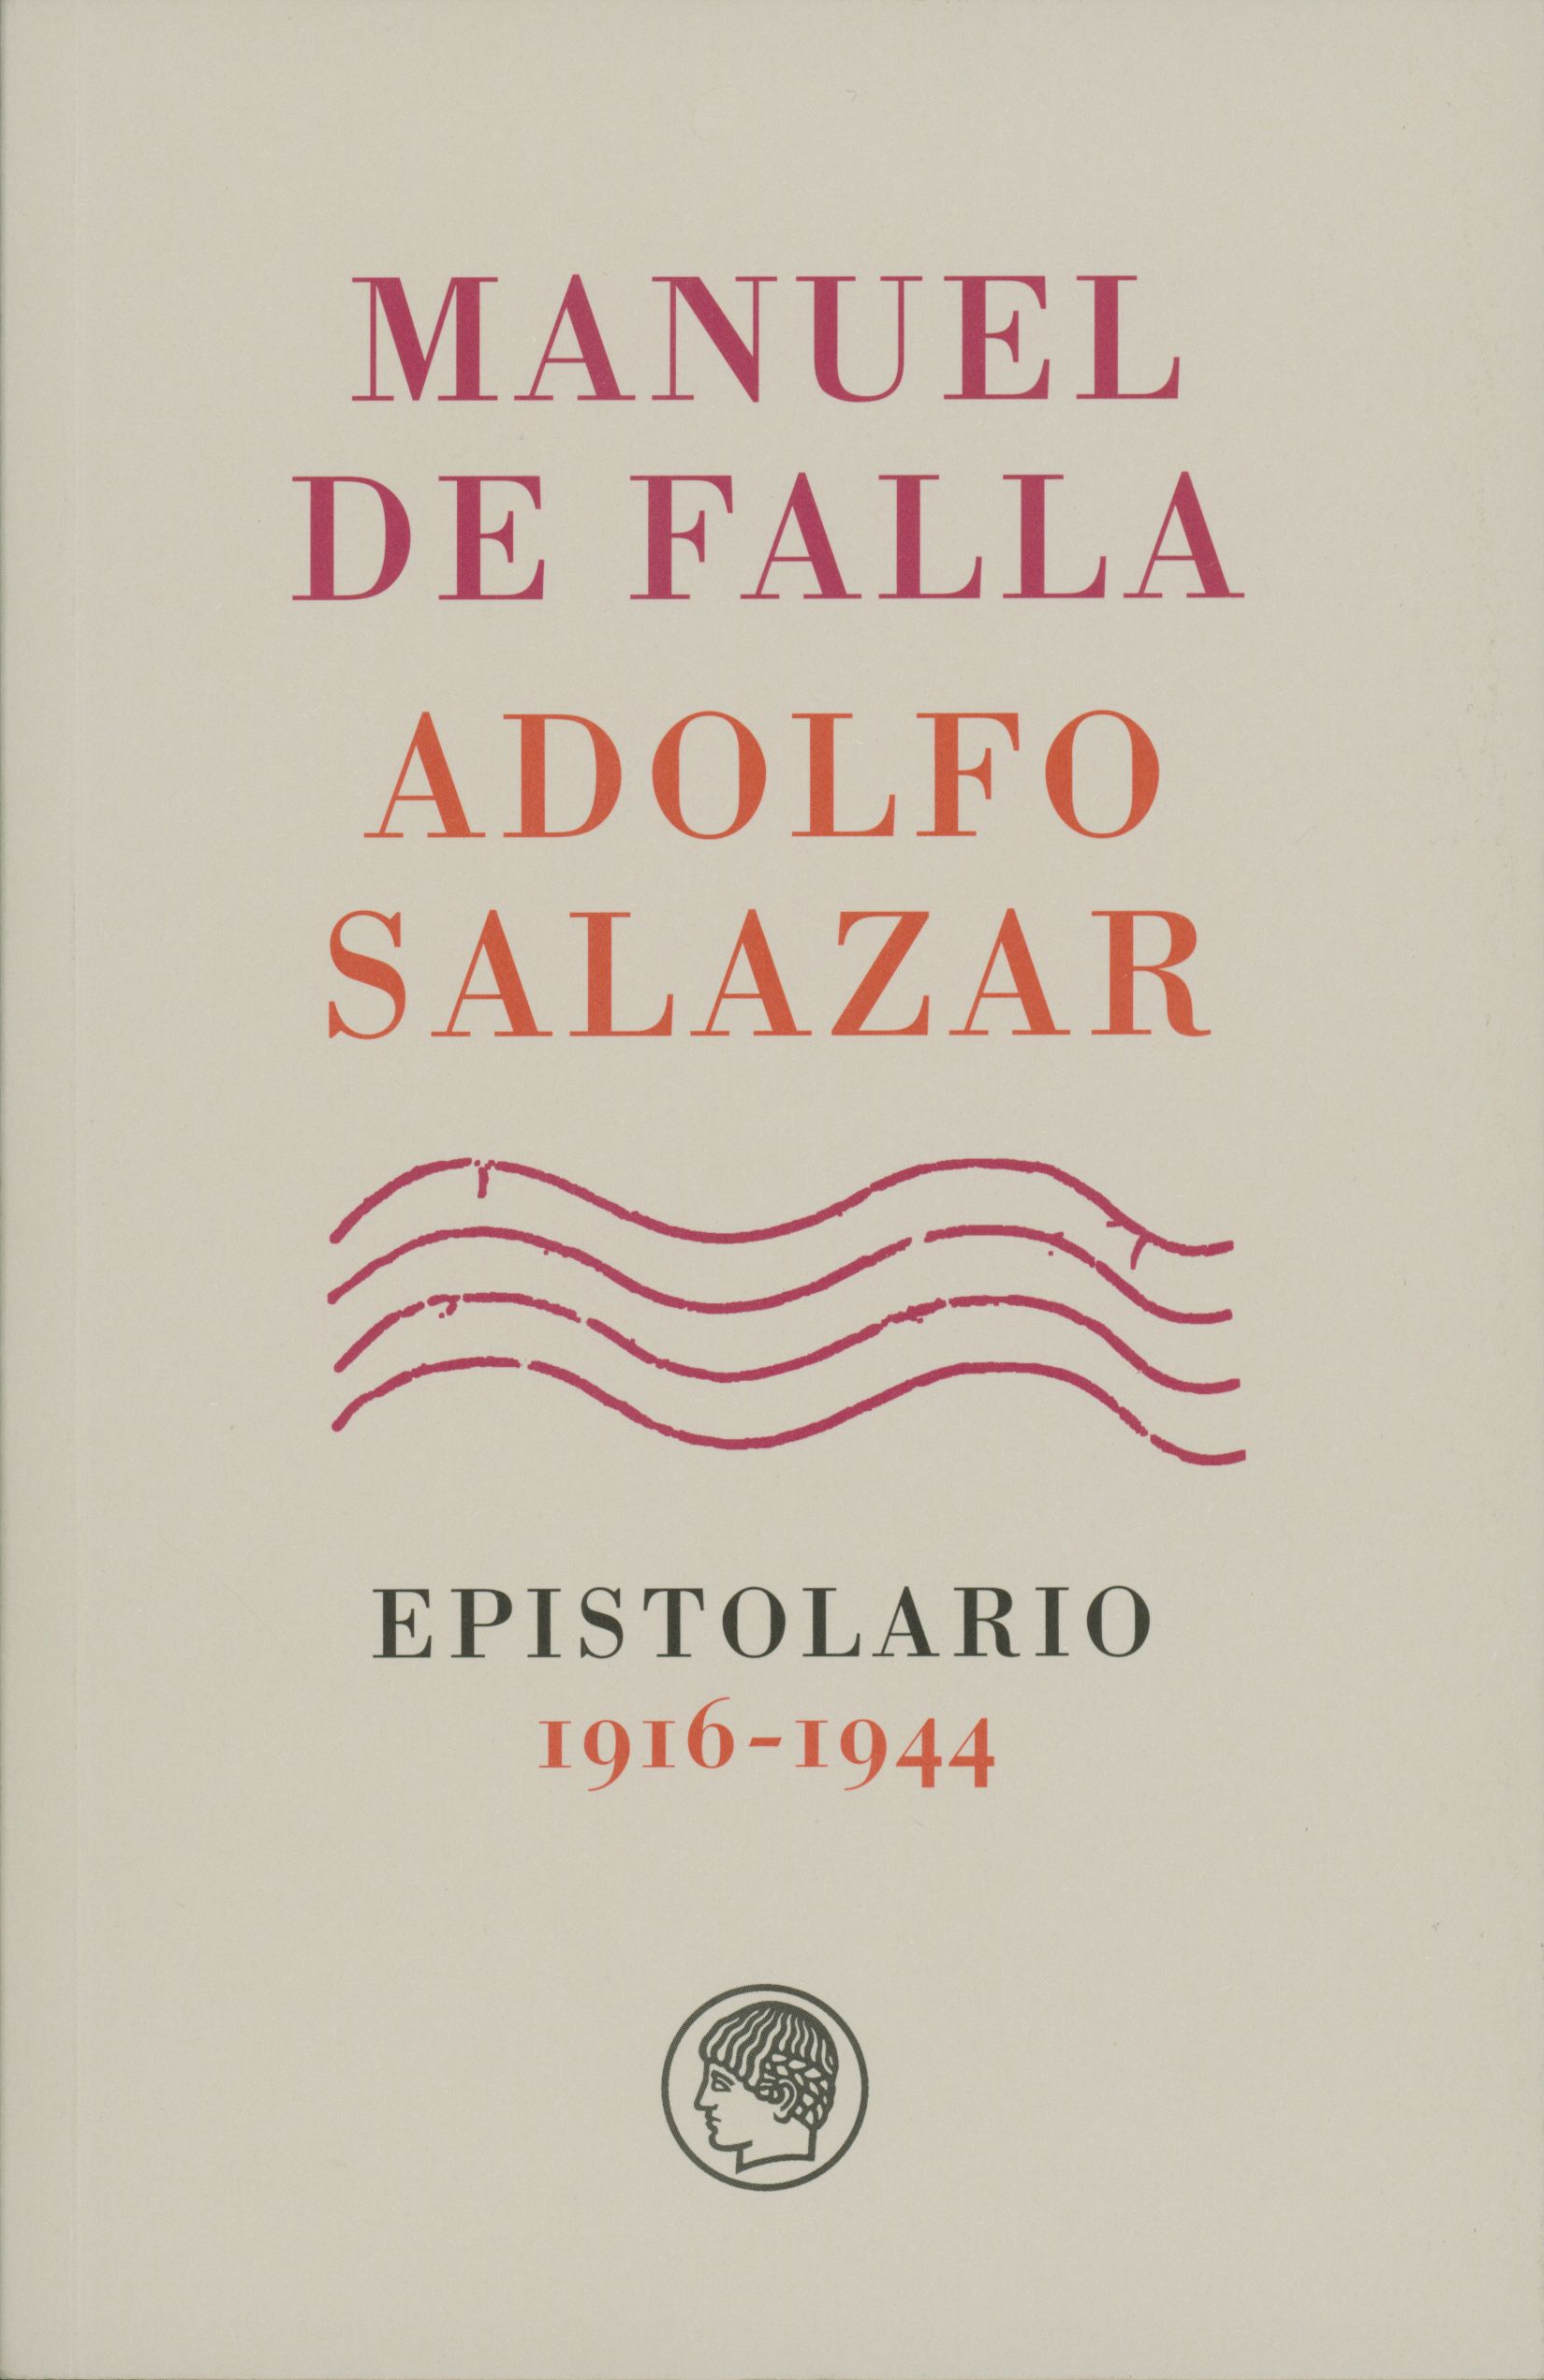 Imagen de portada del libro Manuel de Falla-Adolfo Salazar